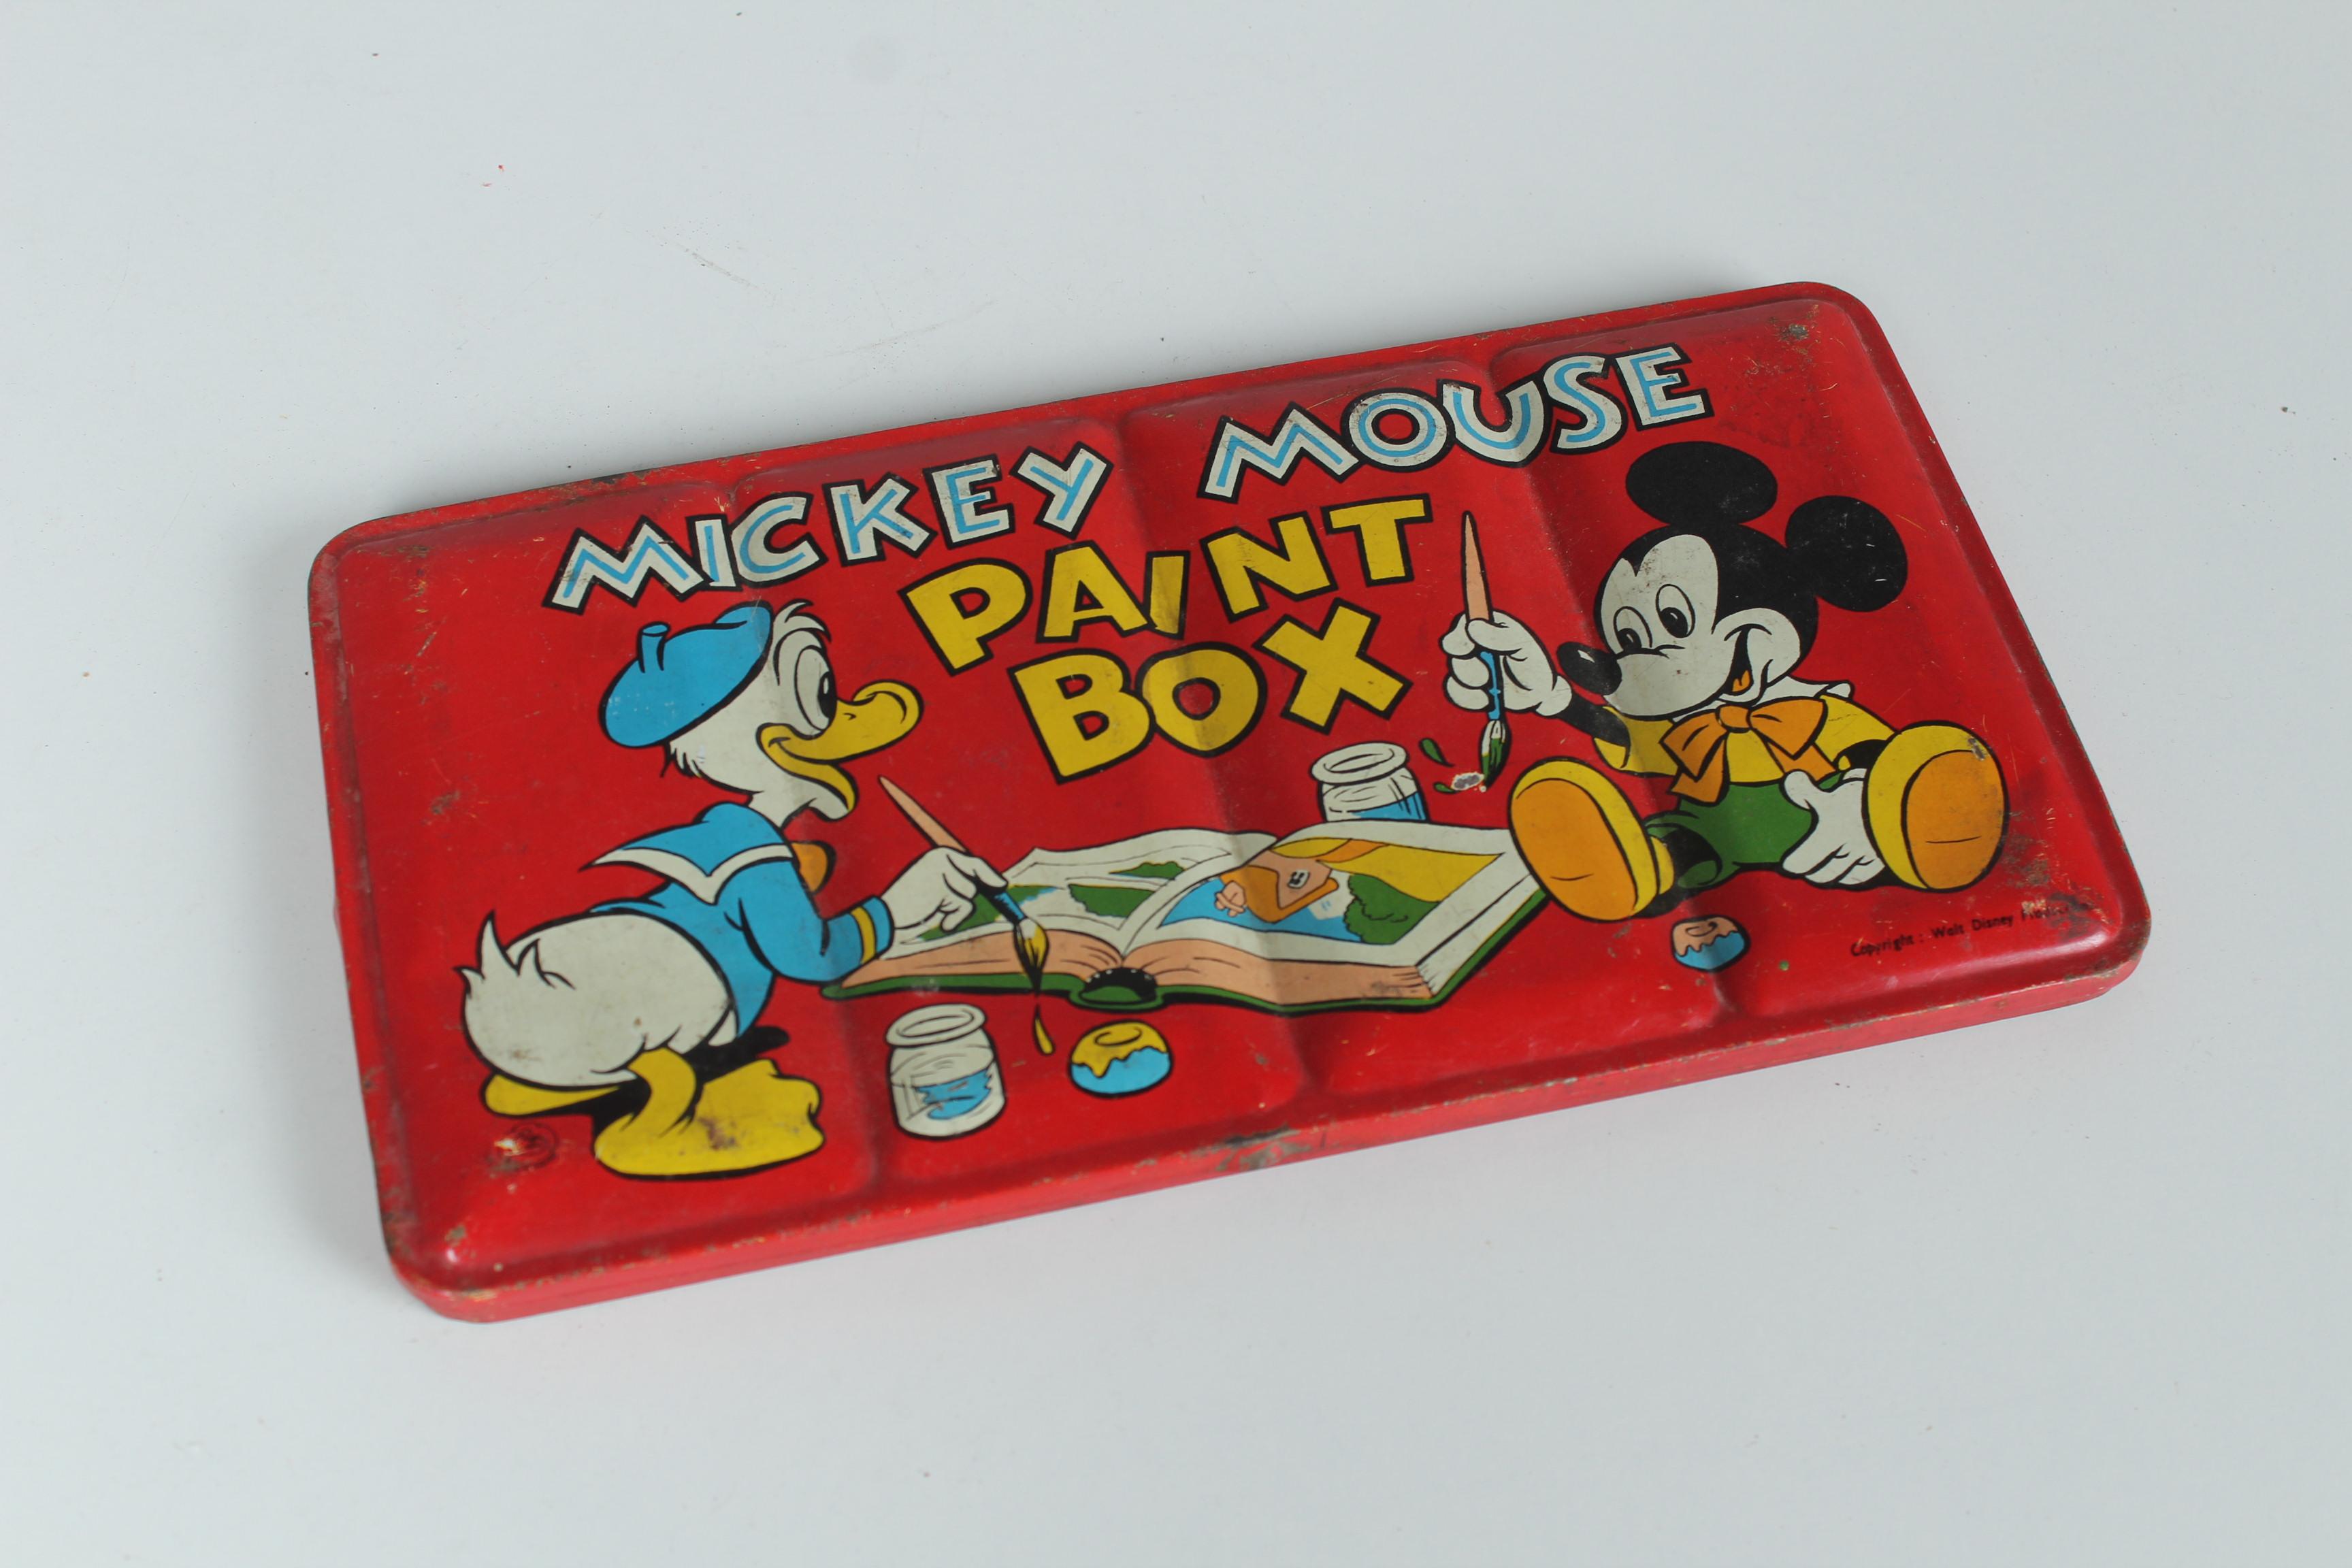 Vintage By Malkasten von Disneys Mickey Mouse.
Die Farbe wird nicht mitgeliefert.
